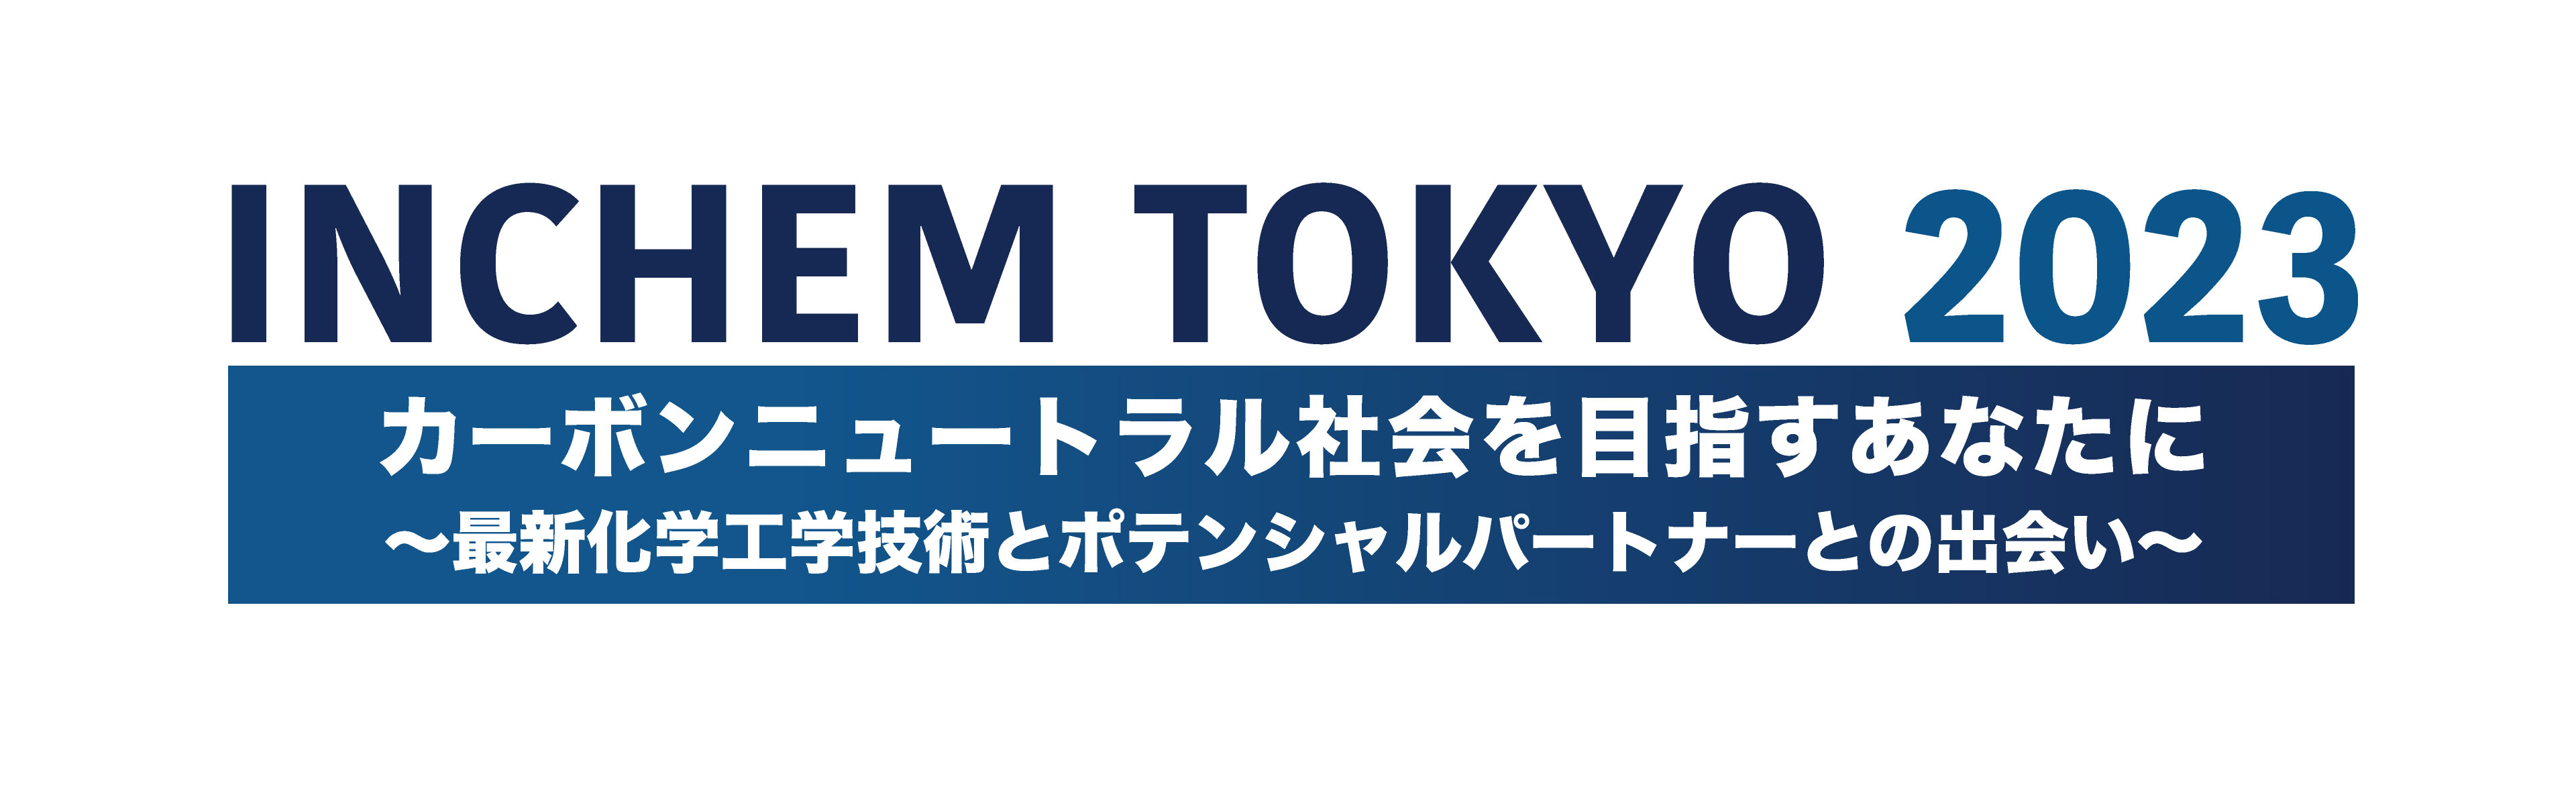 株式会社アルテックス×株式会社白山 INCHEM TOKYO 2023